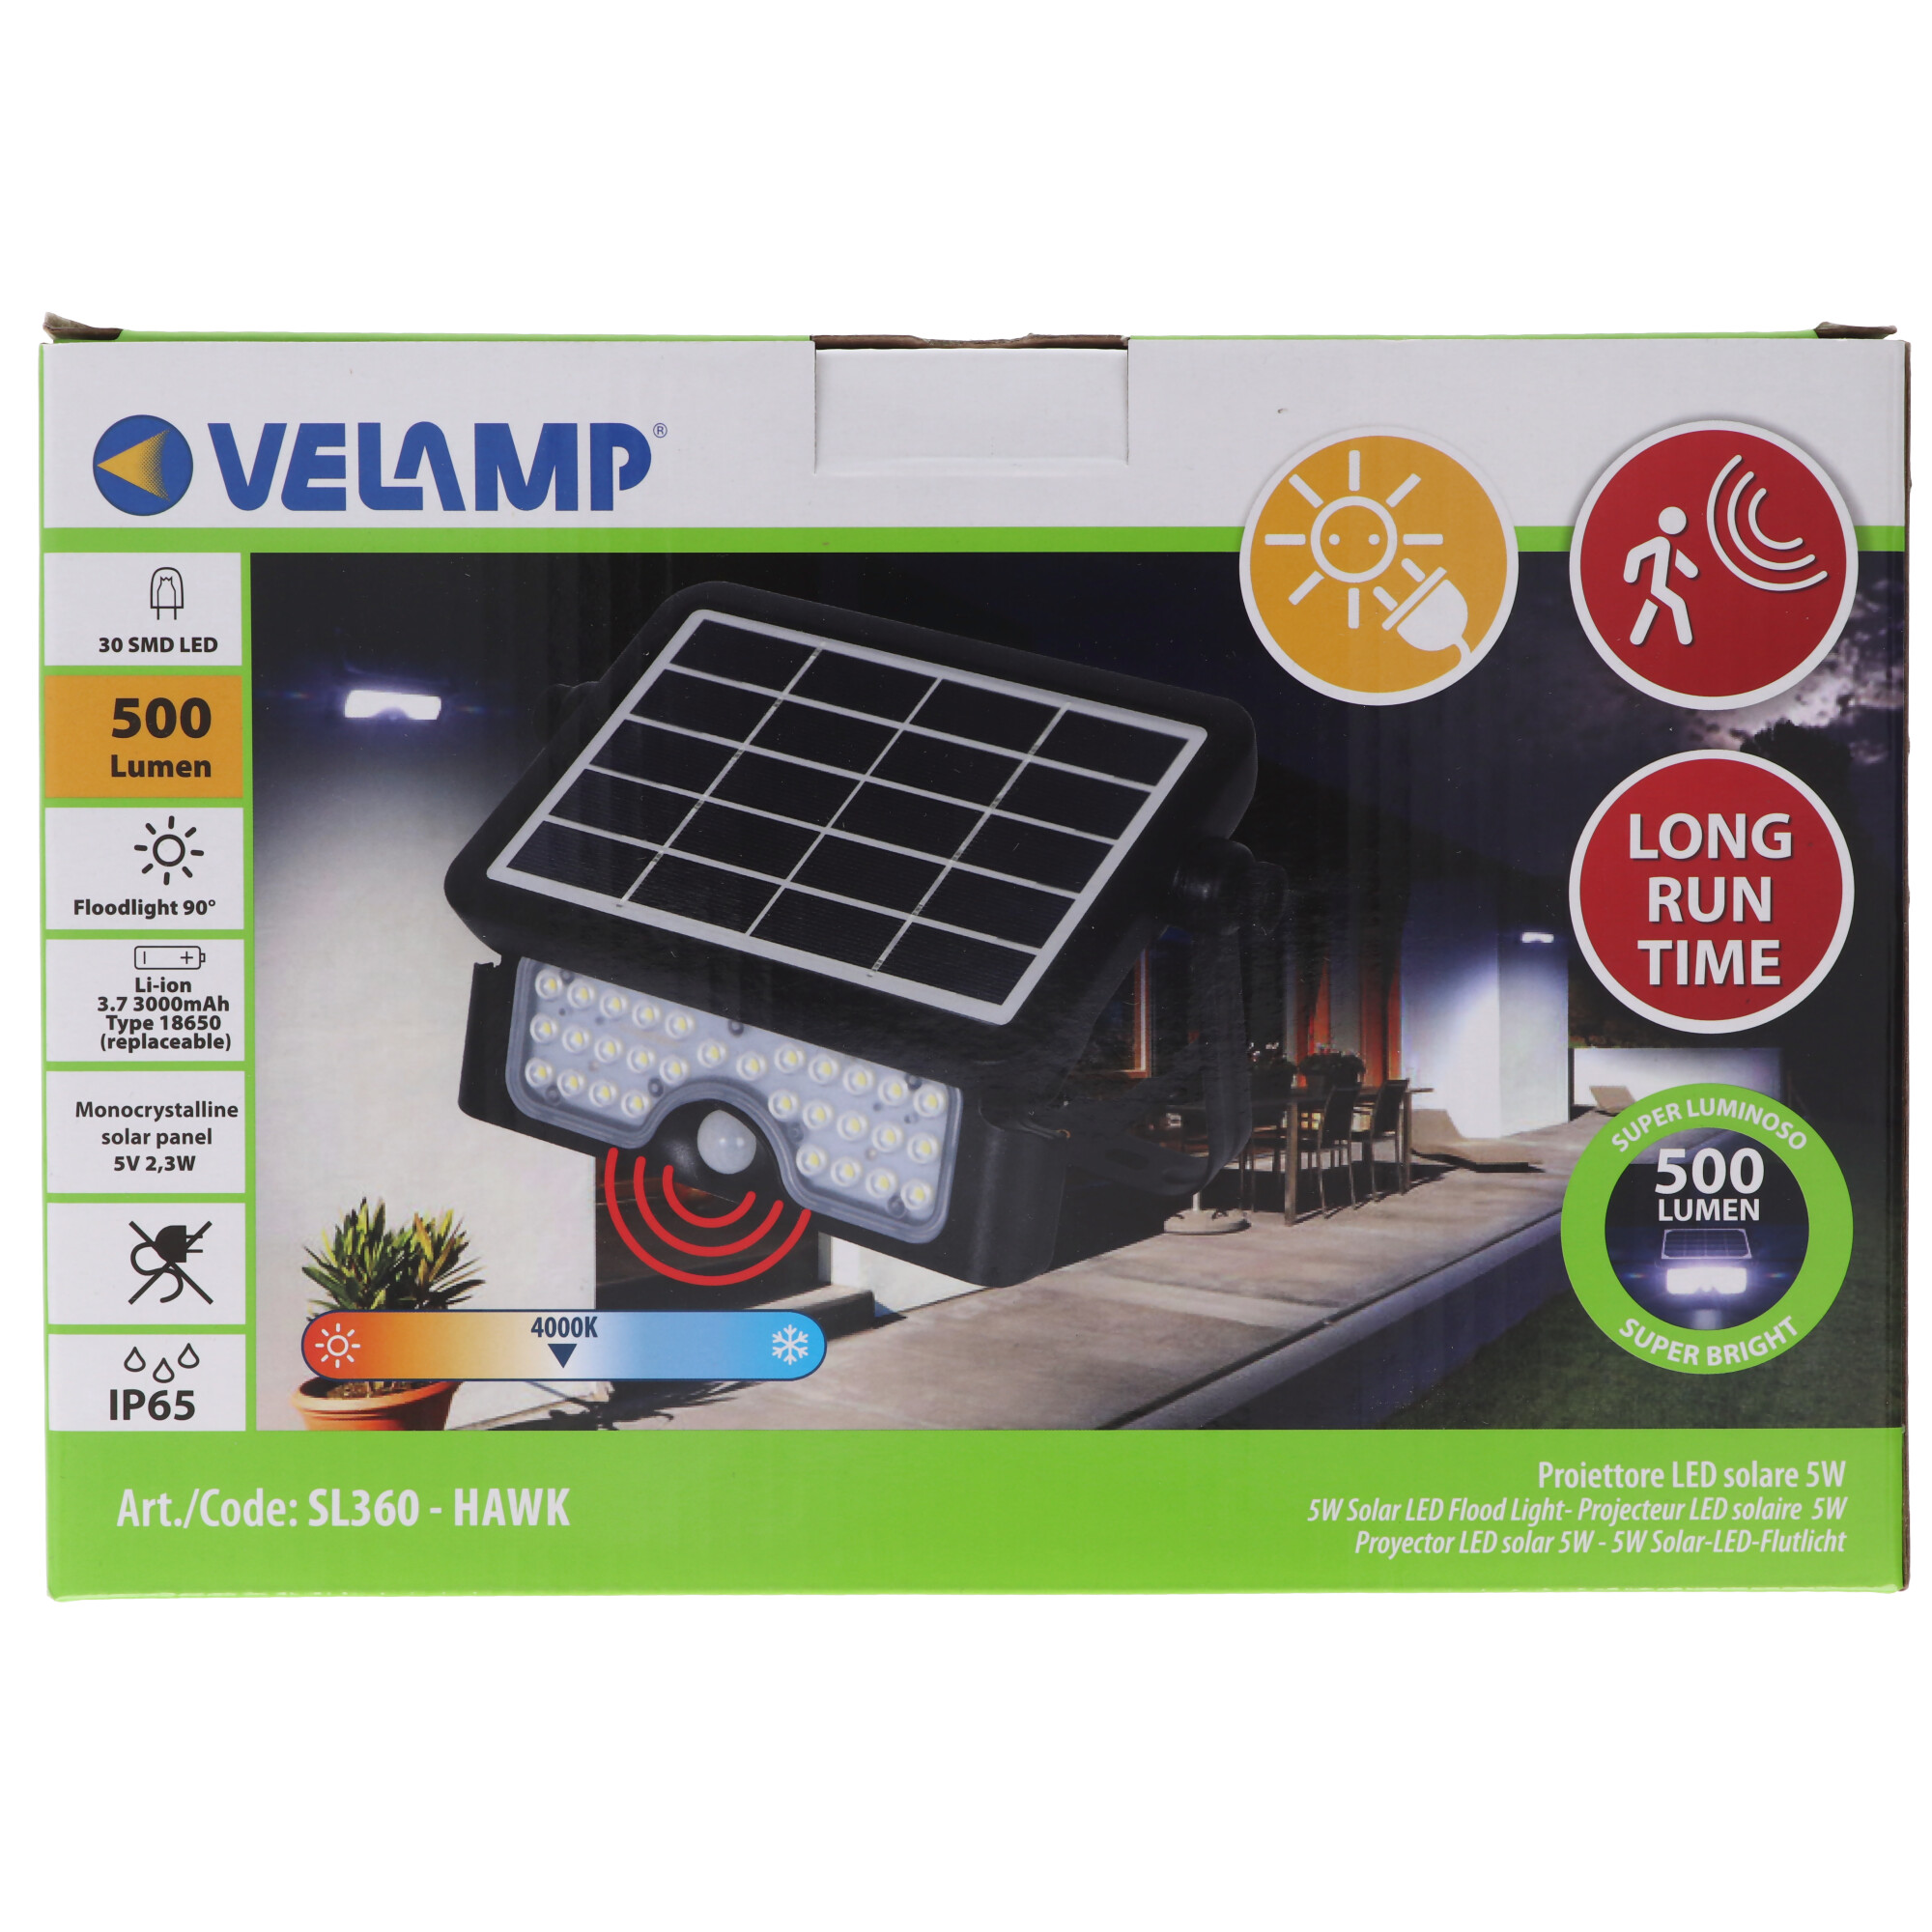 Velamp HAWK: LED-Projektor mit Solarladung 500 Lumen, ausrichtbar. Mit Bewegungsmelder